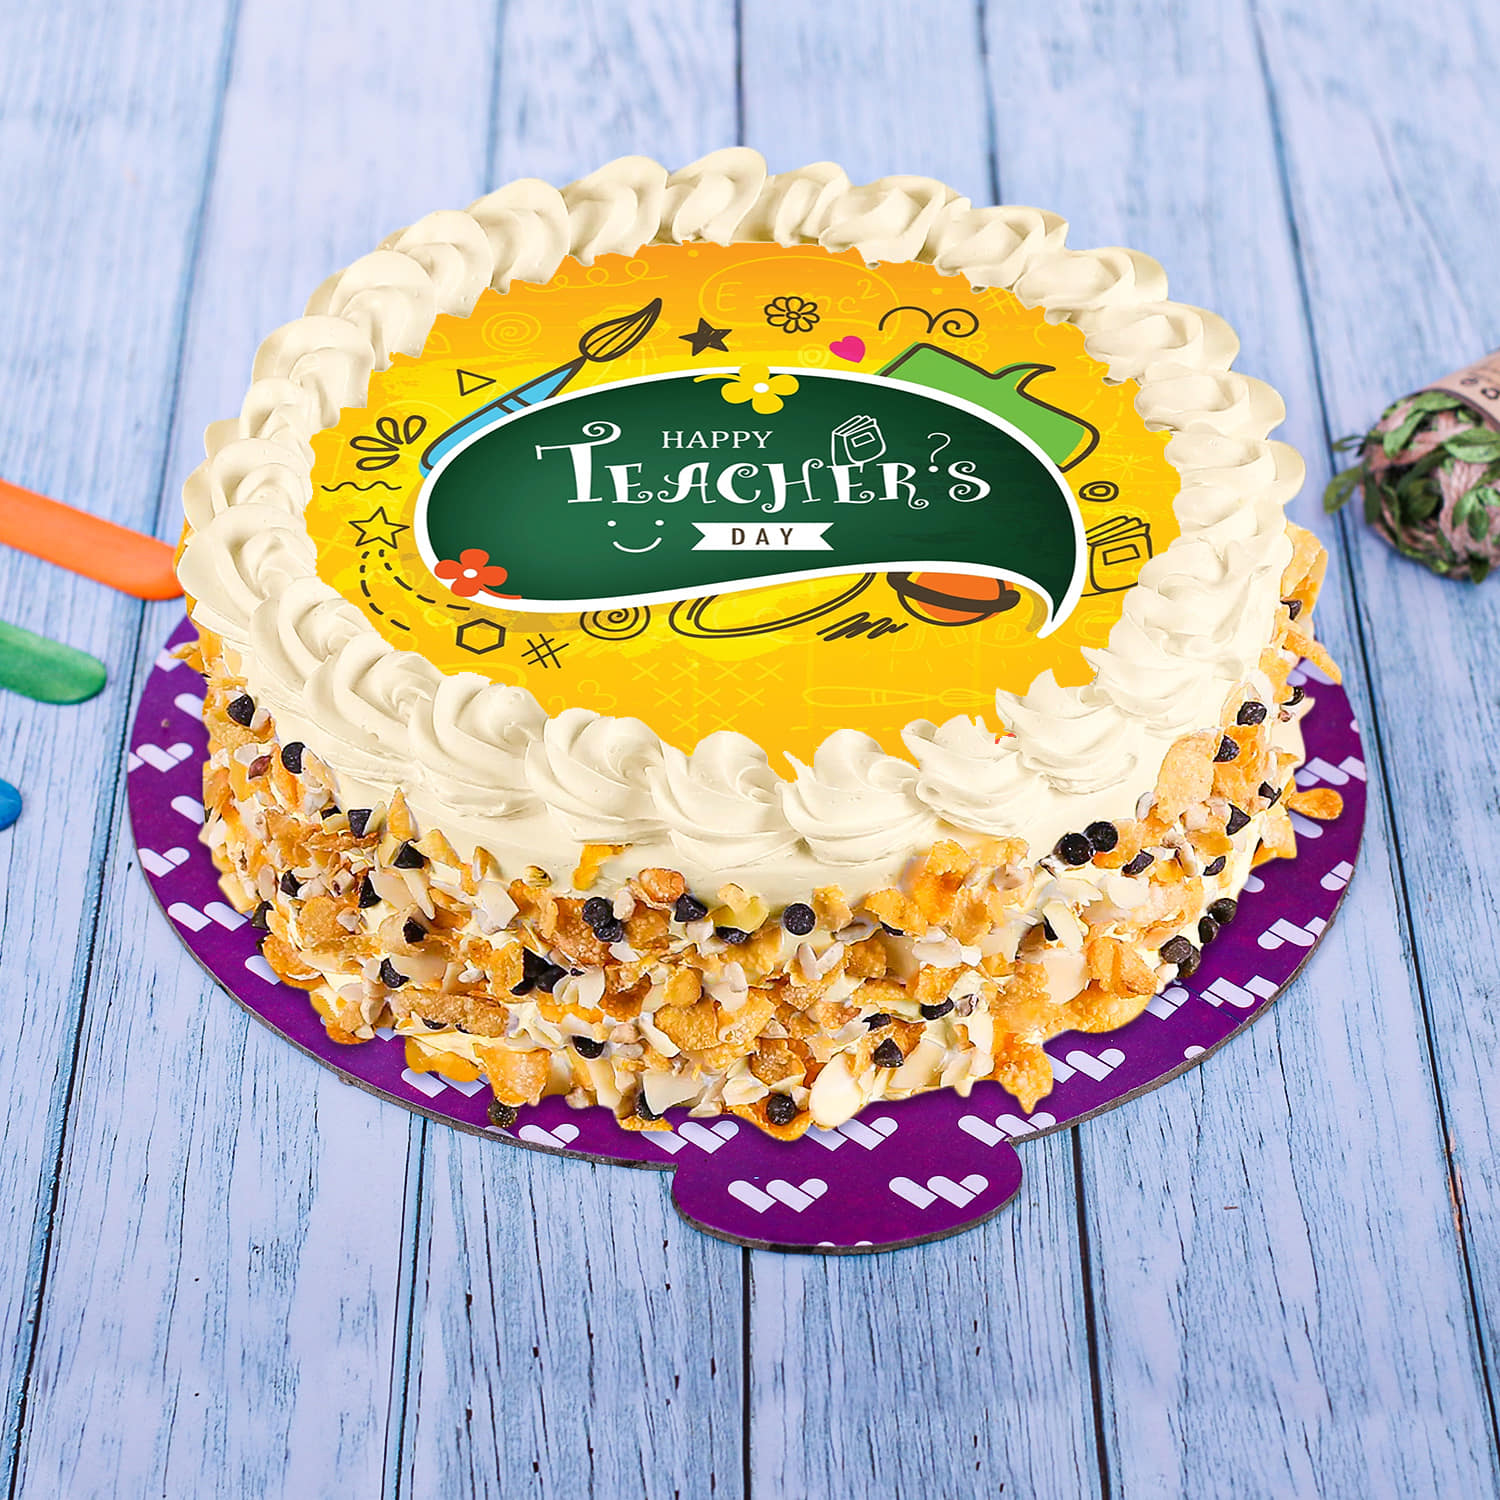 Best Teacher Theme Cake In Kolkata | Order Online